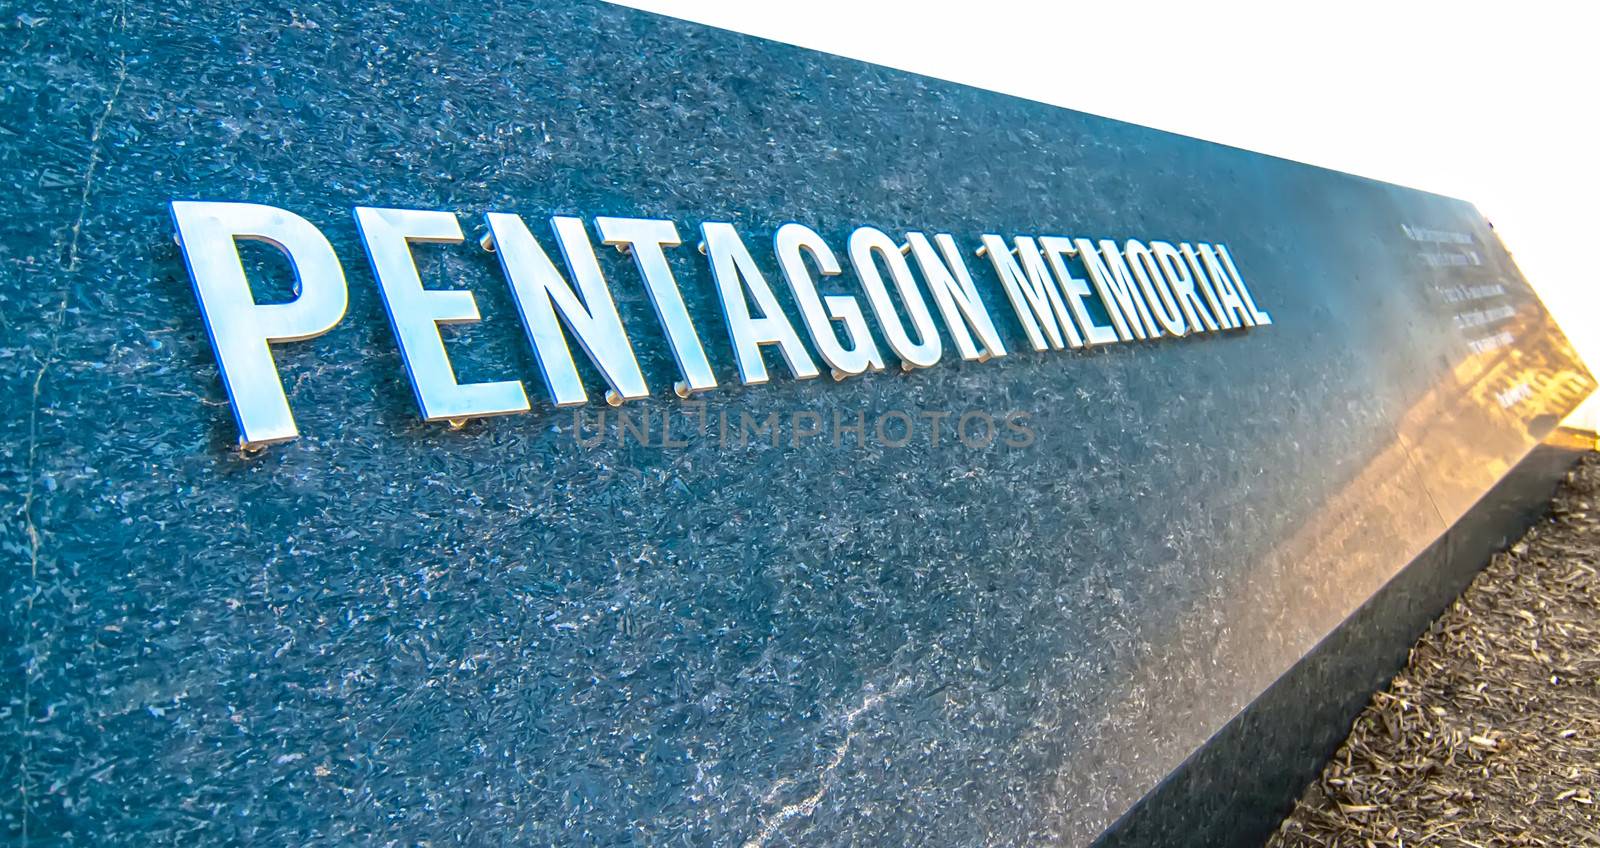 911 Memorial Victims Pentagon Attack in Arlington Virginia in th by digidreamgrafix